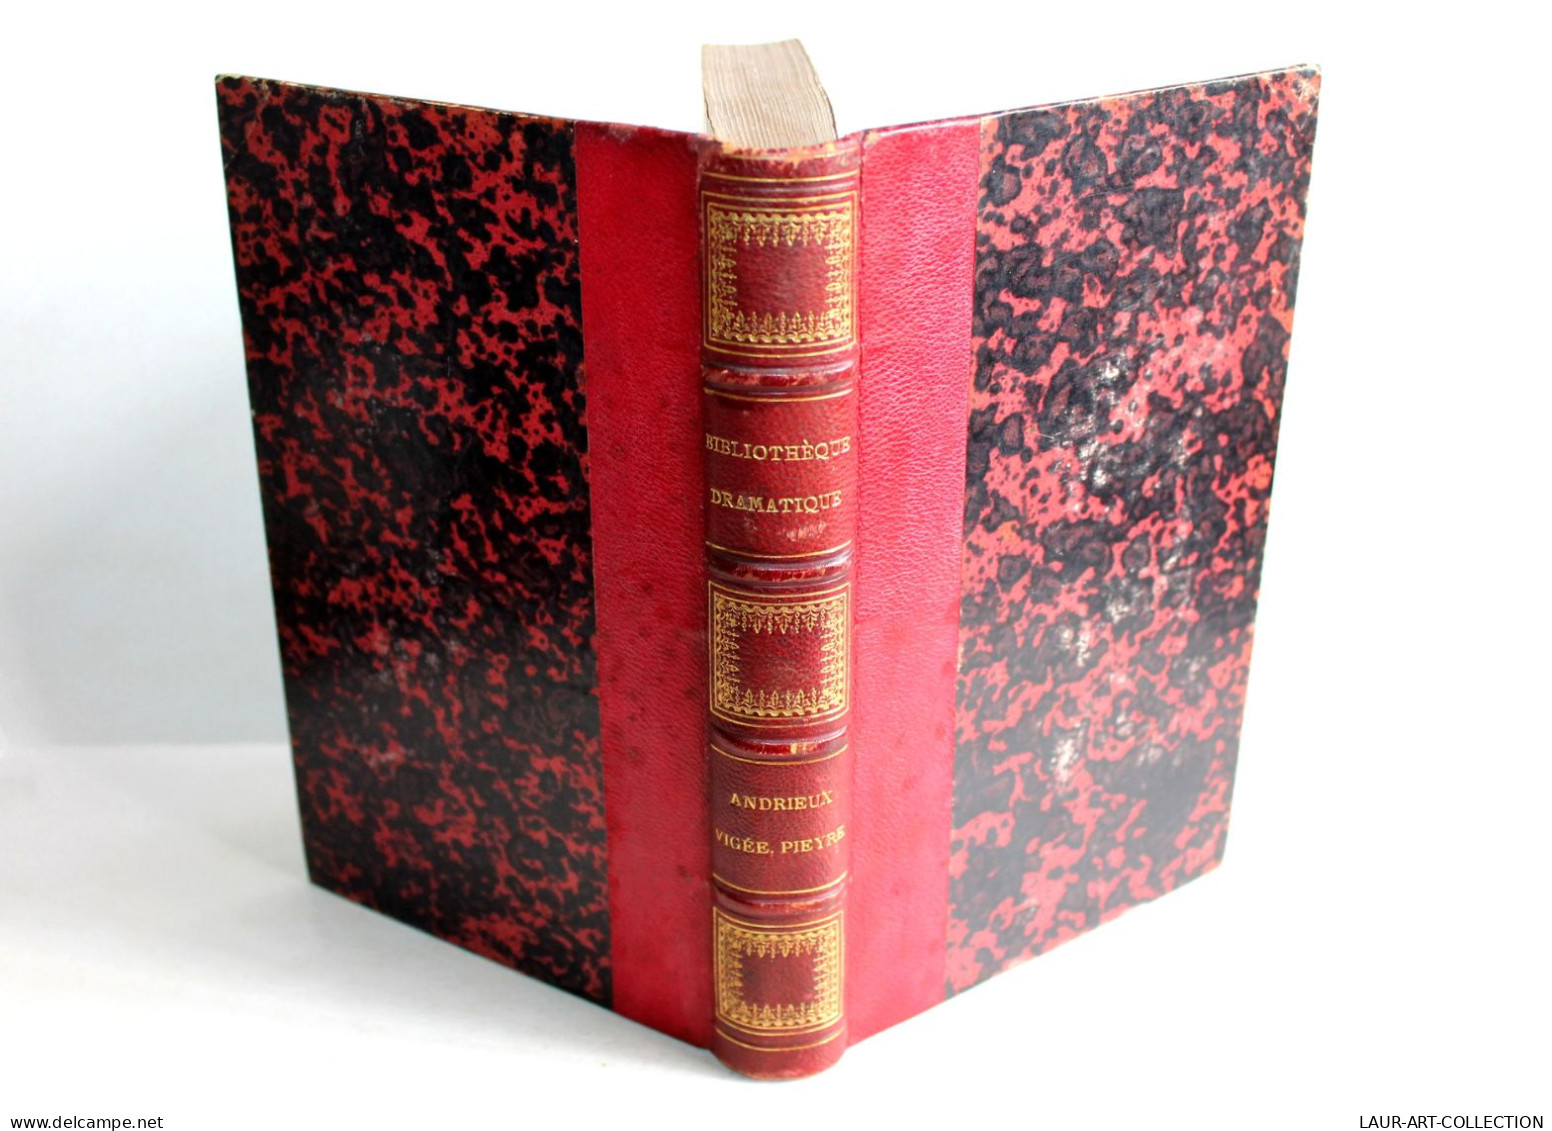 BIBLIOTHEQUE DRAMATIQUE Ou REPERTOIRE UNIVERSEL THEATRE FRANCAIS Par NODIER 1824 / ANCIEN LIVRE XIXe SIECLE (1803.163) - Autori Francesi